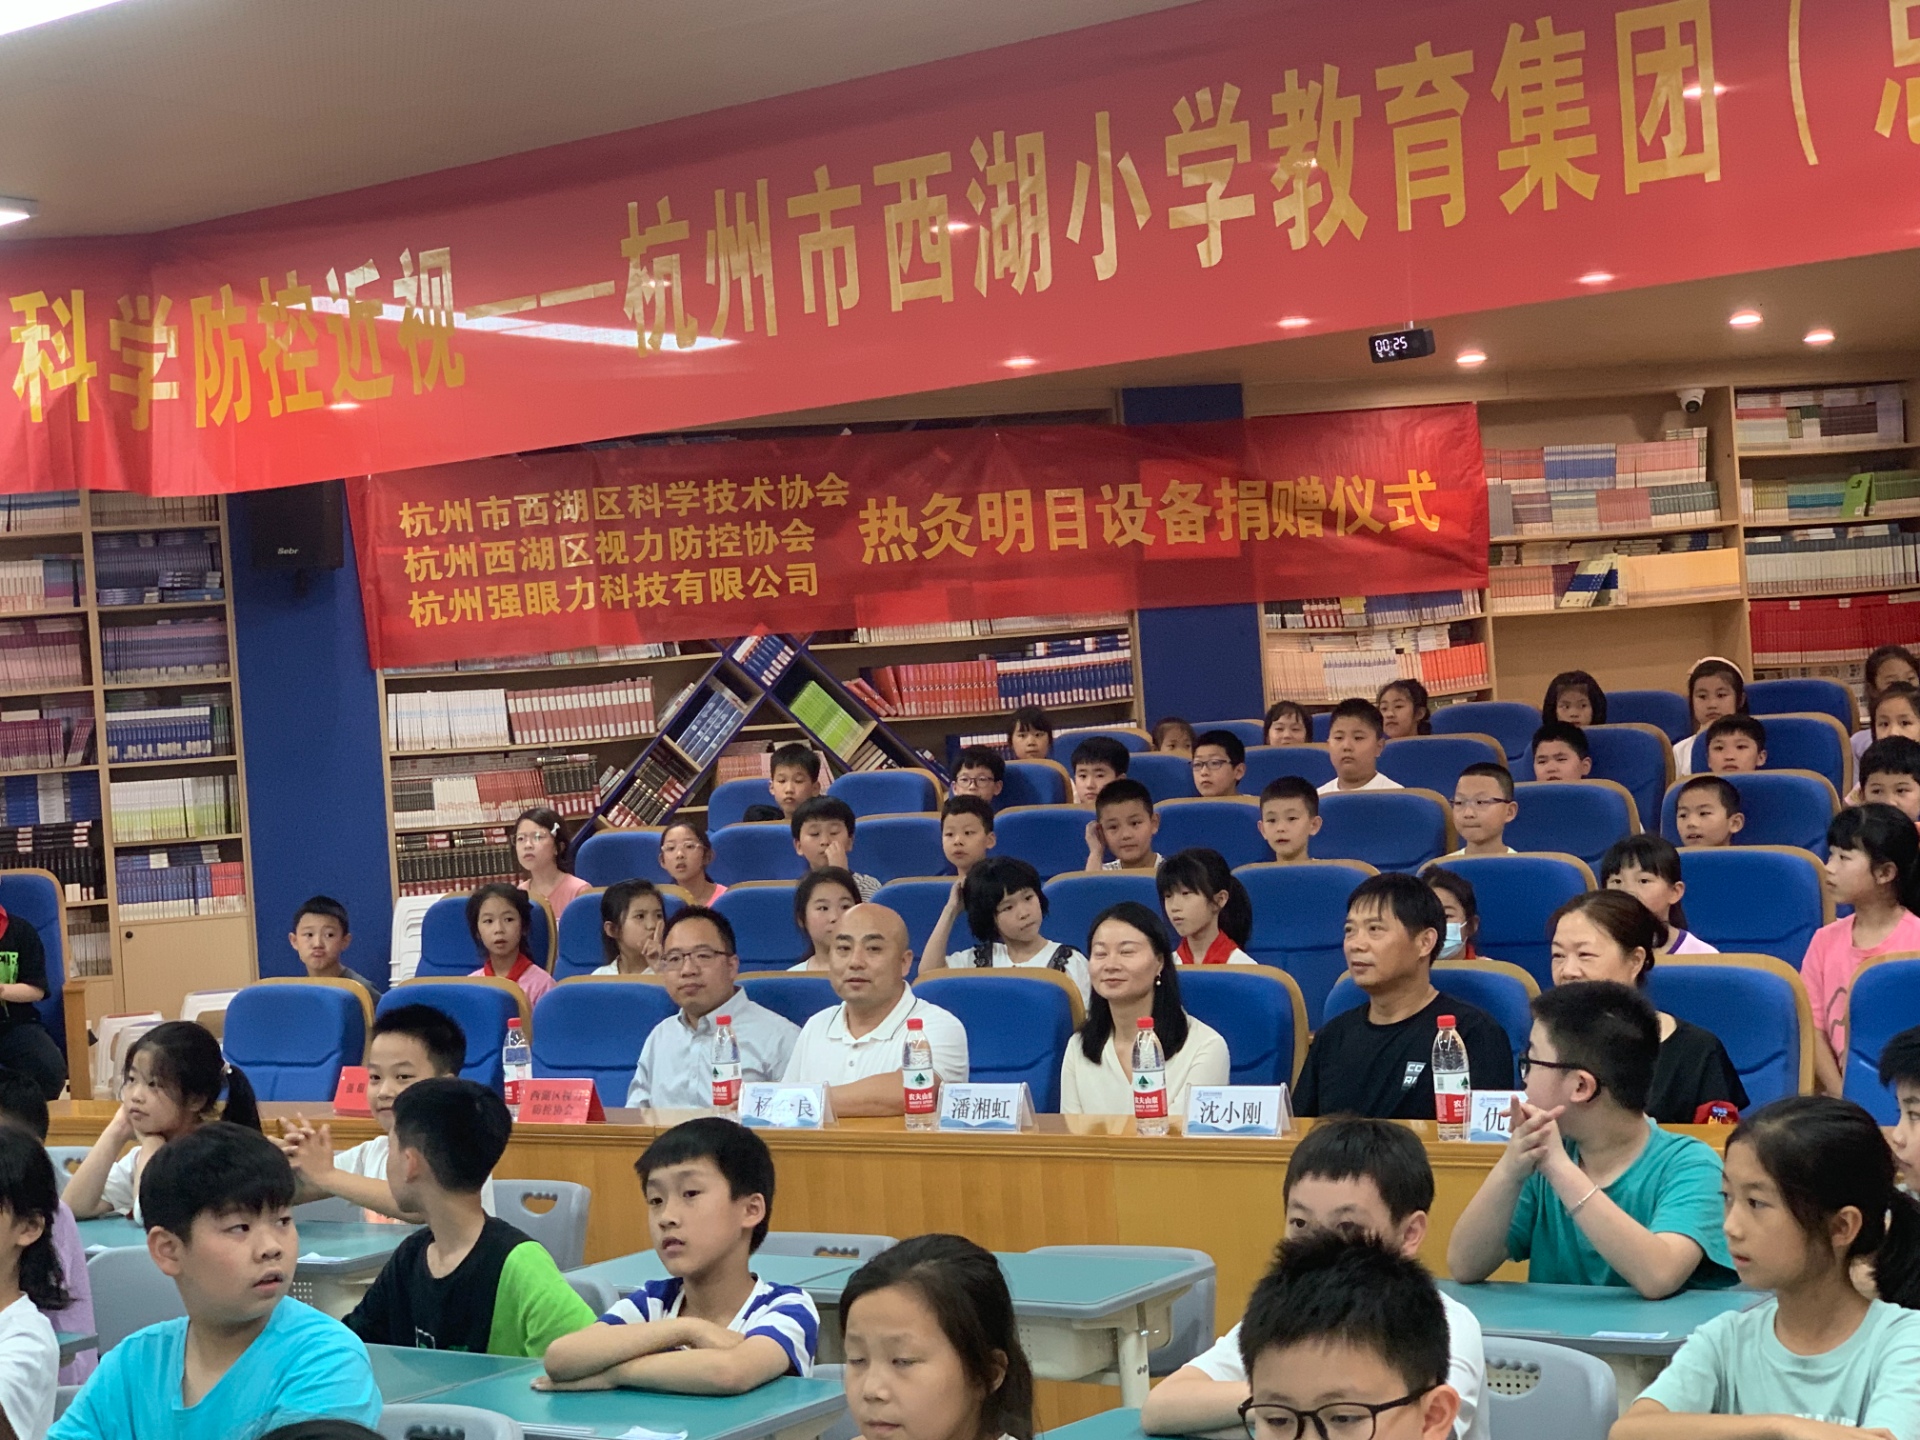 强眼视力又进校园啦！公益捐赠6台热灸设备至《杭州市西湖小学》，并开展护眼科普大讲堂，共同呵护孩子们的眼睛！